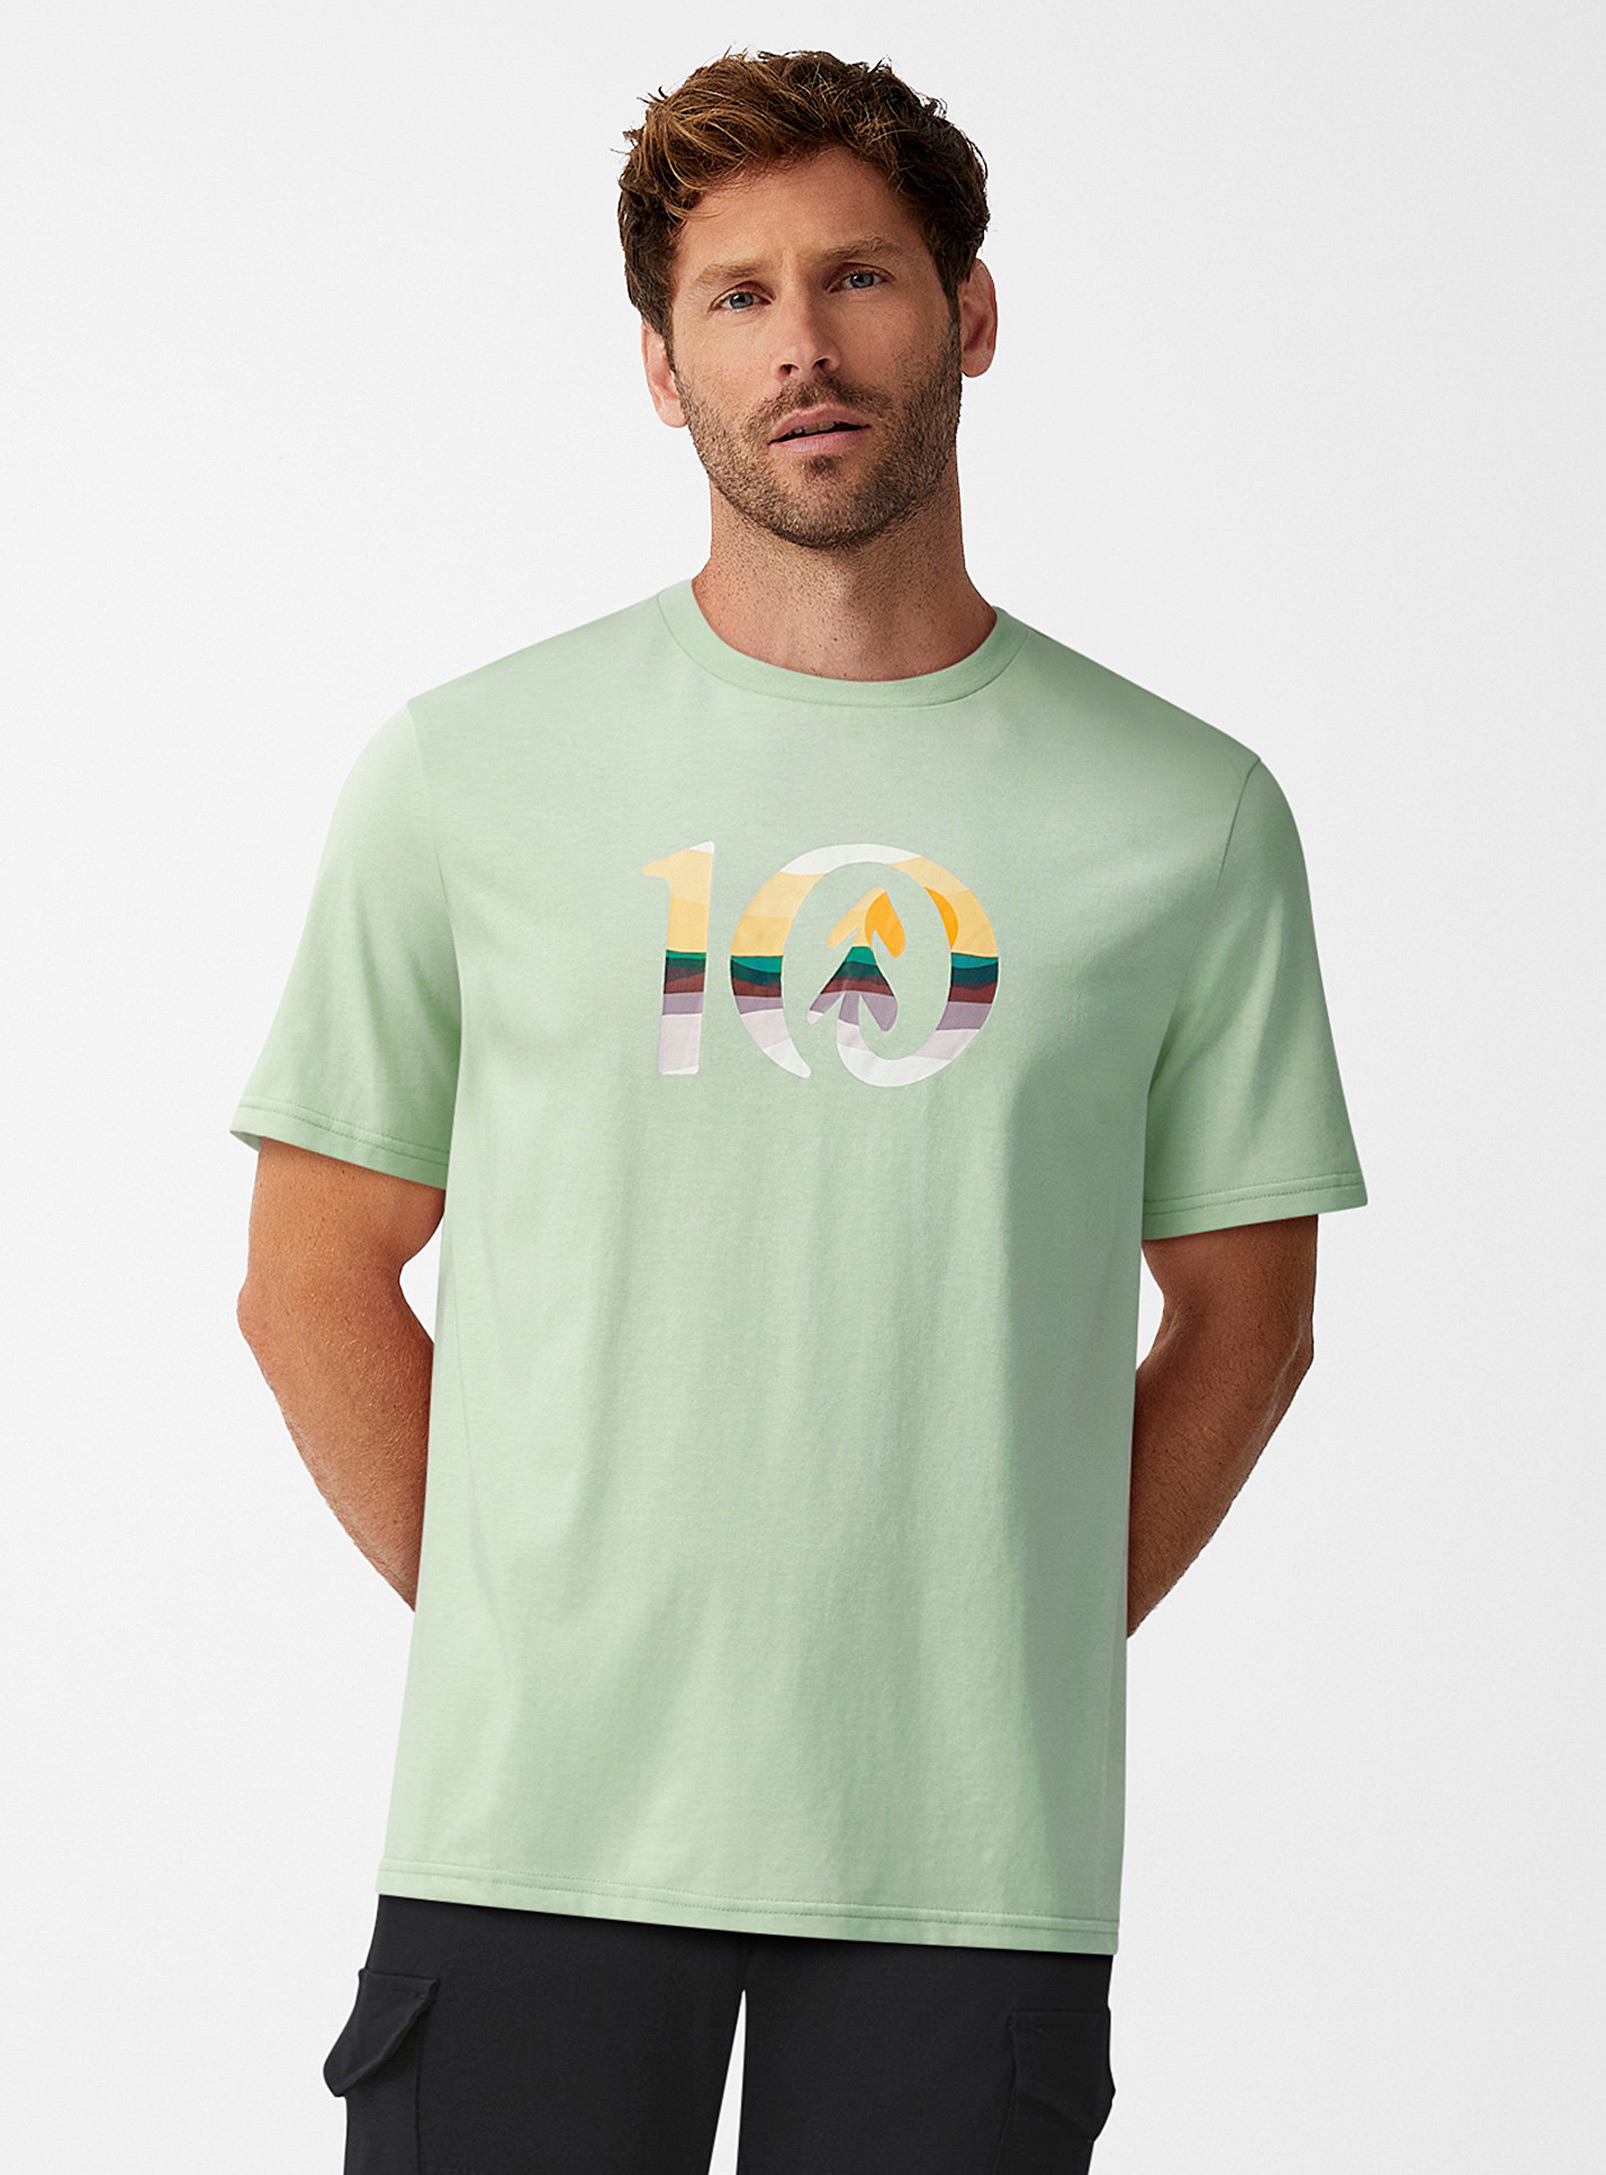 Tentree - Le t-shirt logo rayures colorées